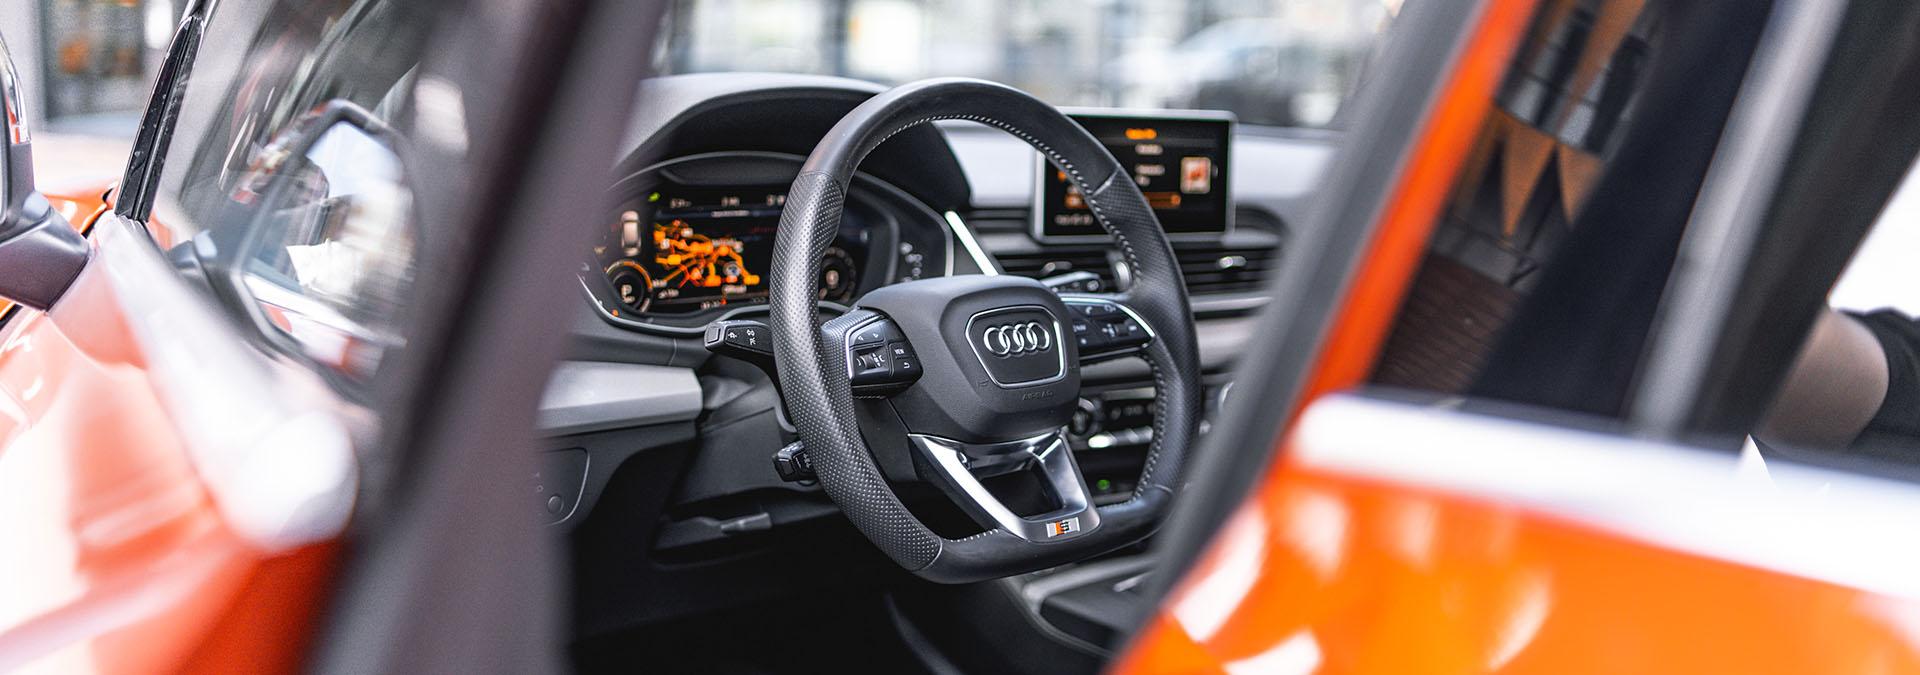 Audi-vaihtoautot